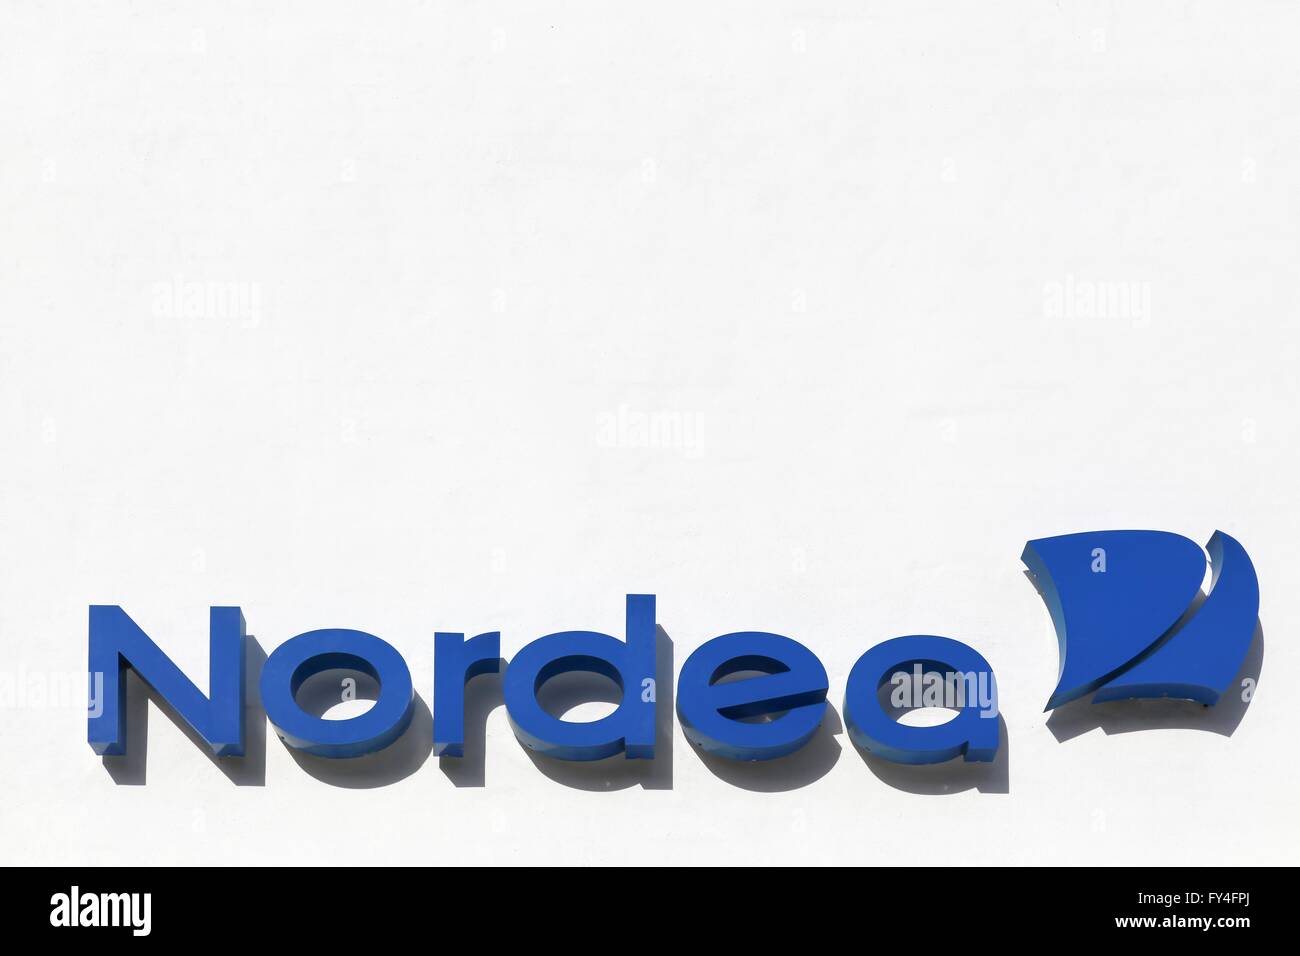 Nordea bank logo on a facade Stock Photo